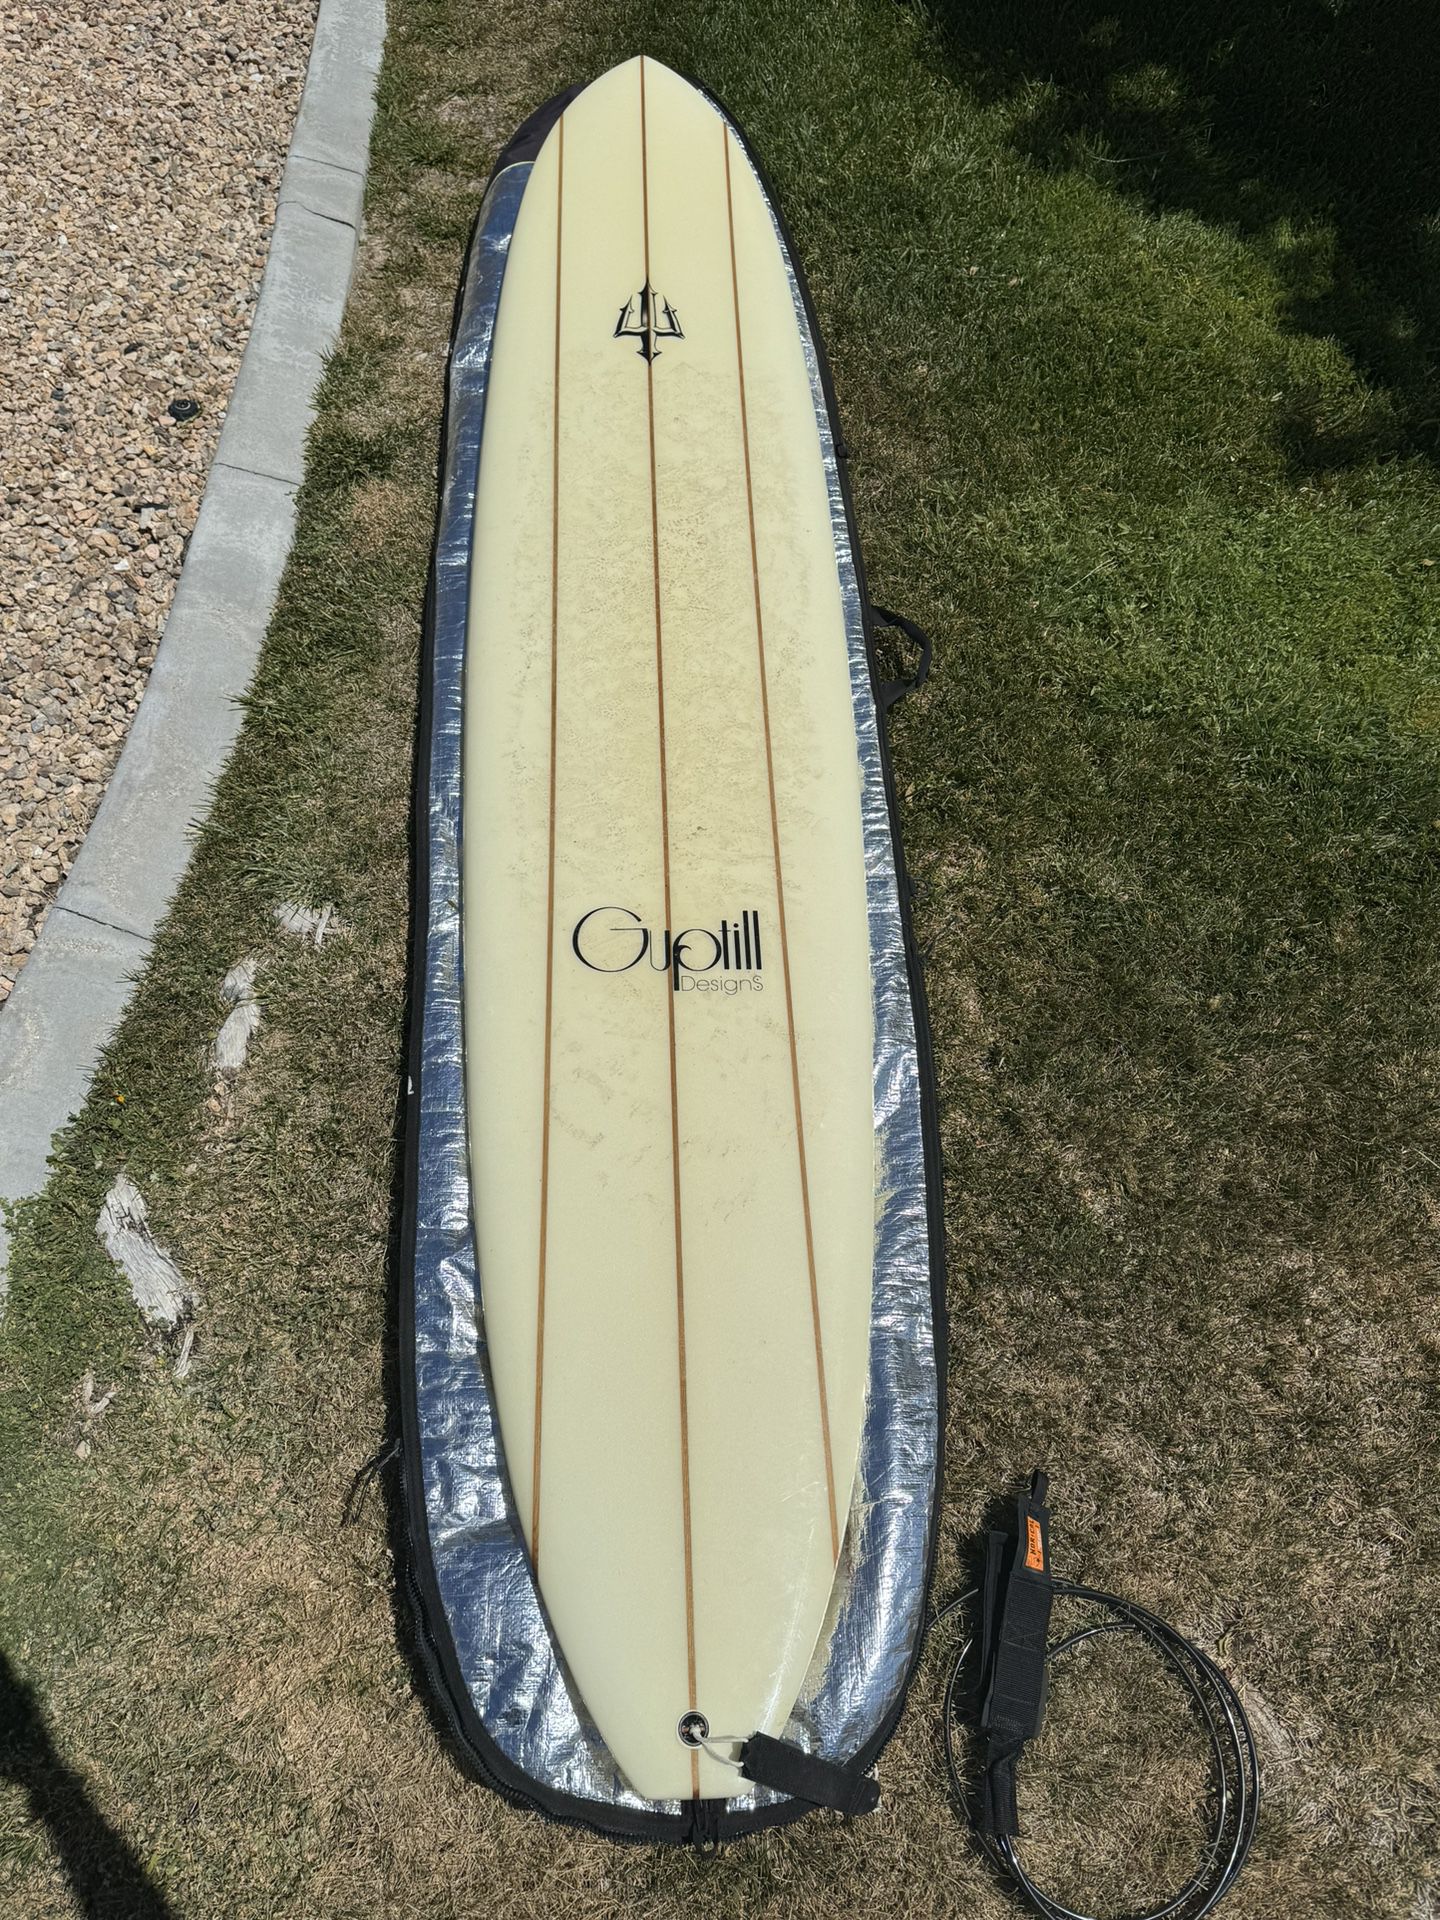 10’ Guptill Designs Surfboard - NorCal Boardshop